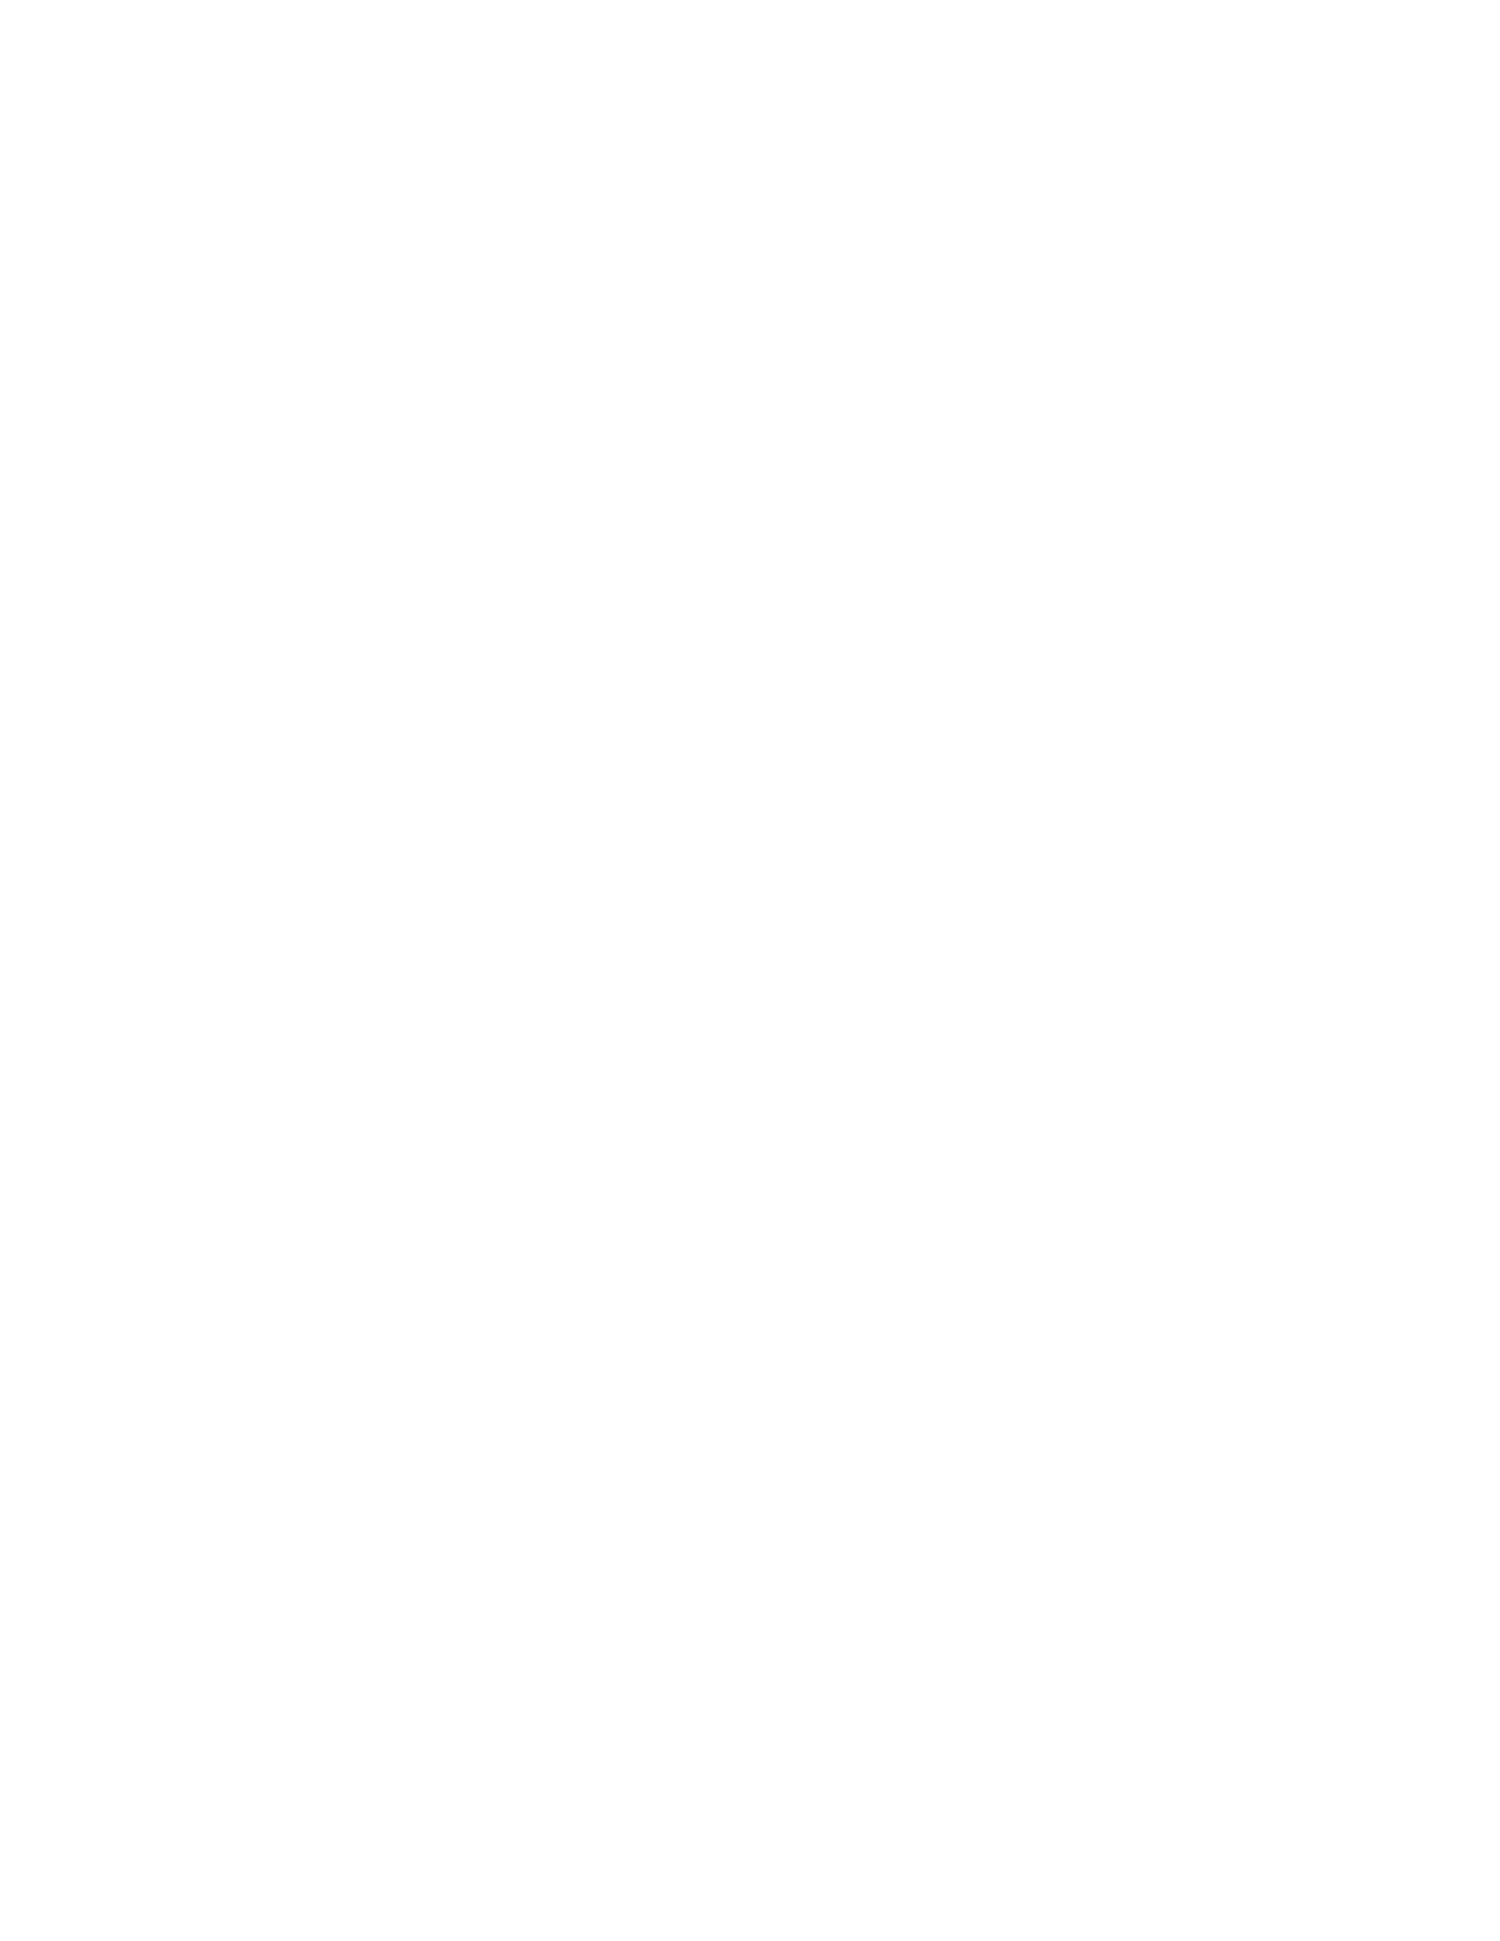 Ruach Global Network